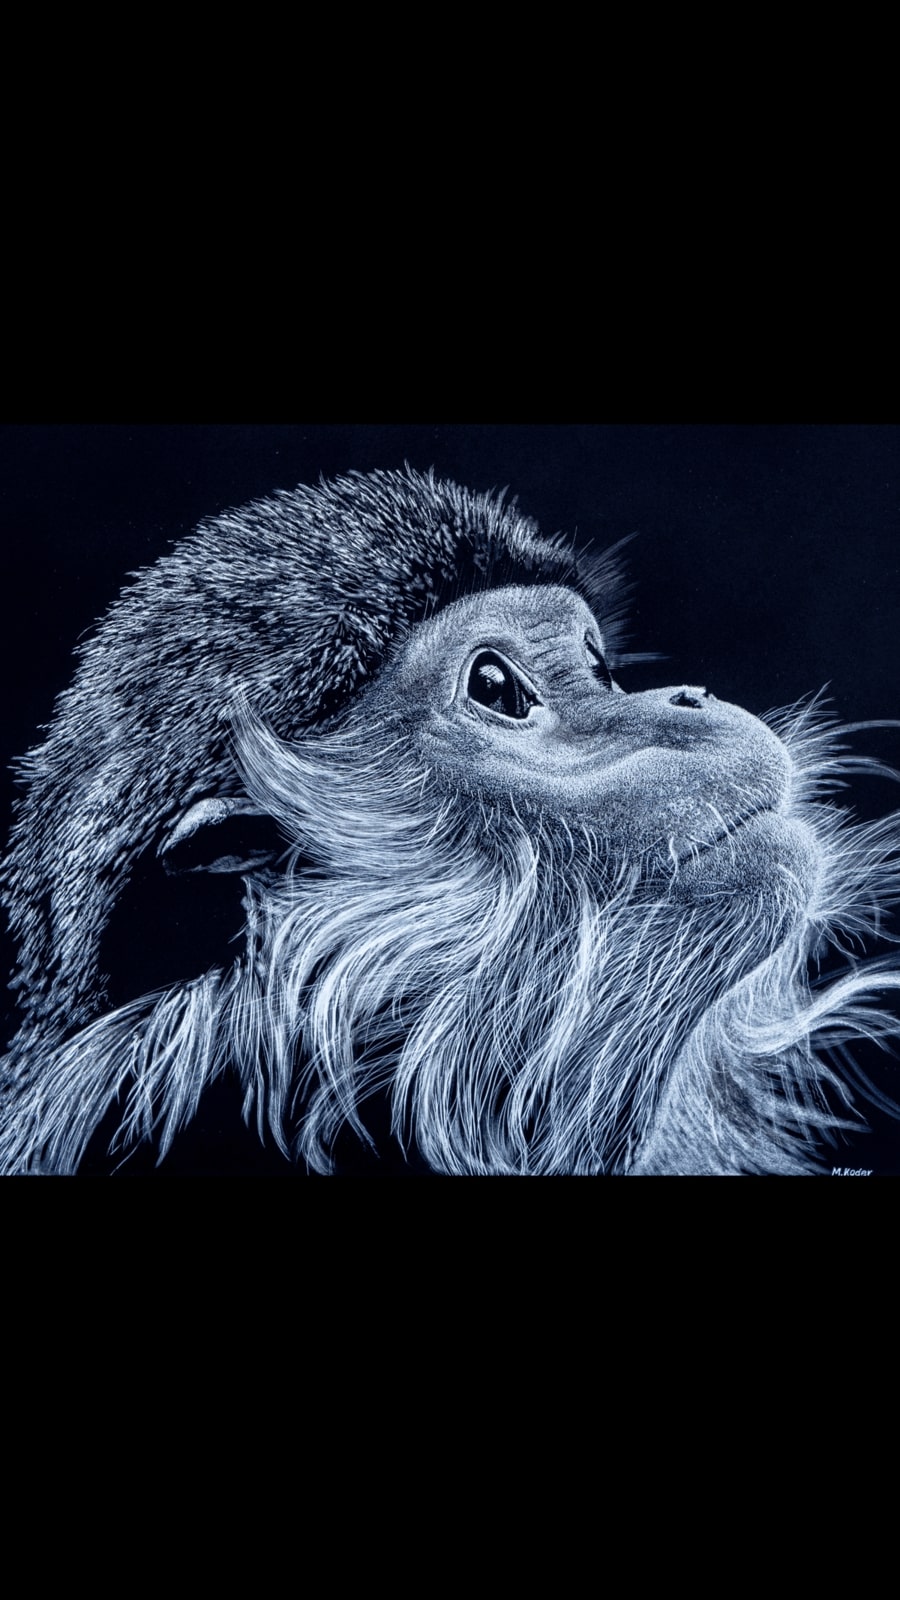 Langur monkey 11”x14” Sold